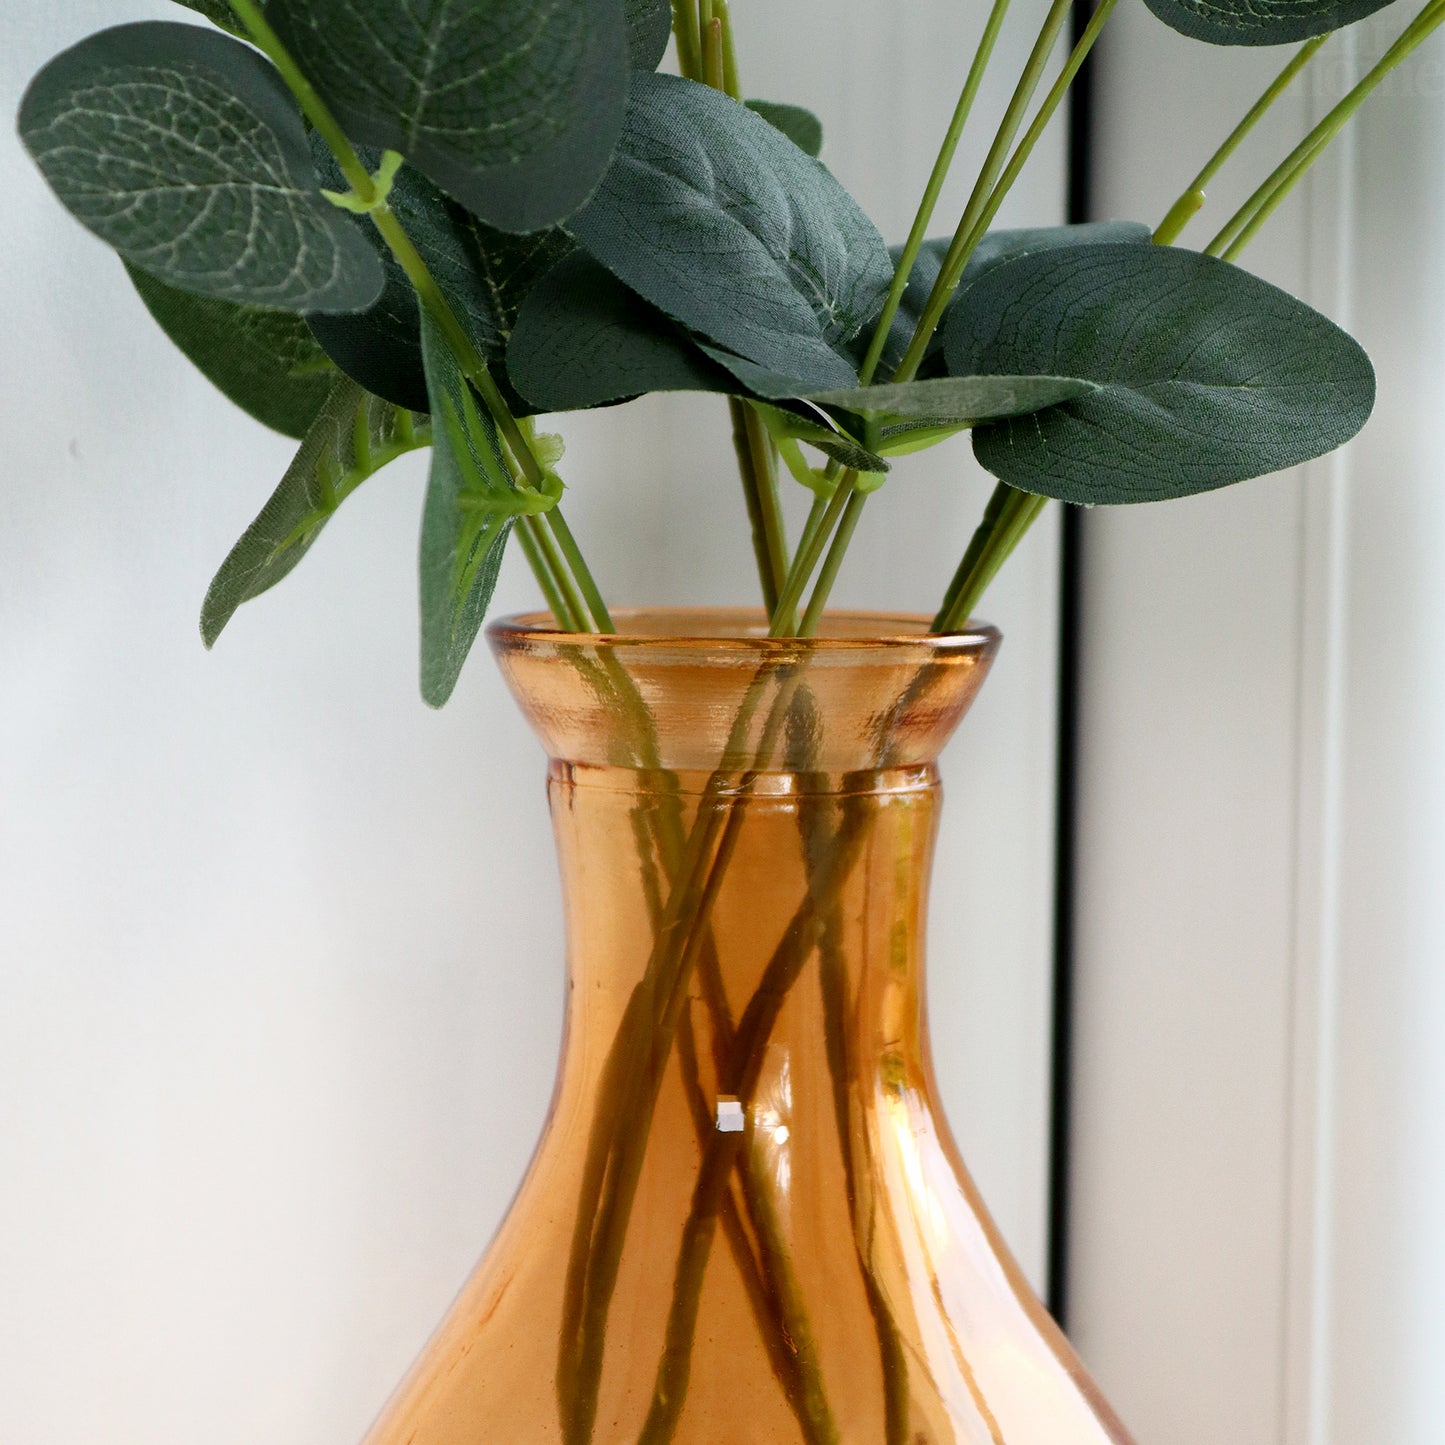 Orange Patterned Glass Bottle Vase